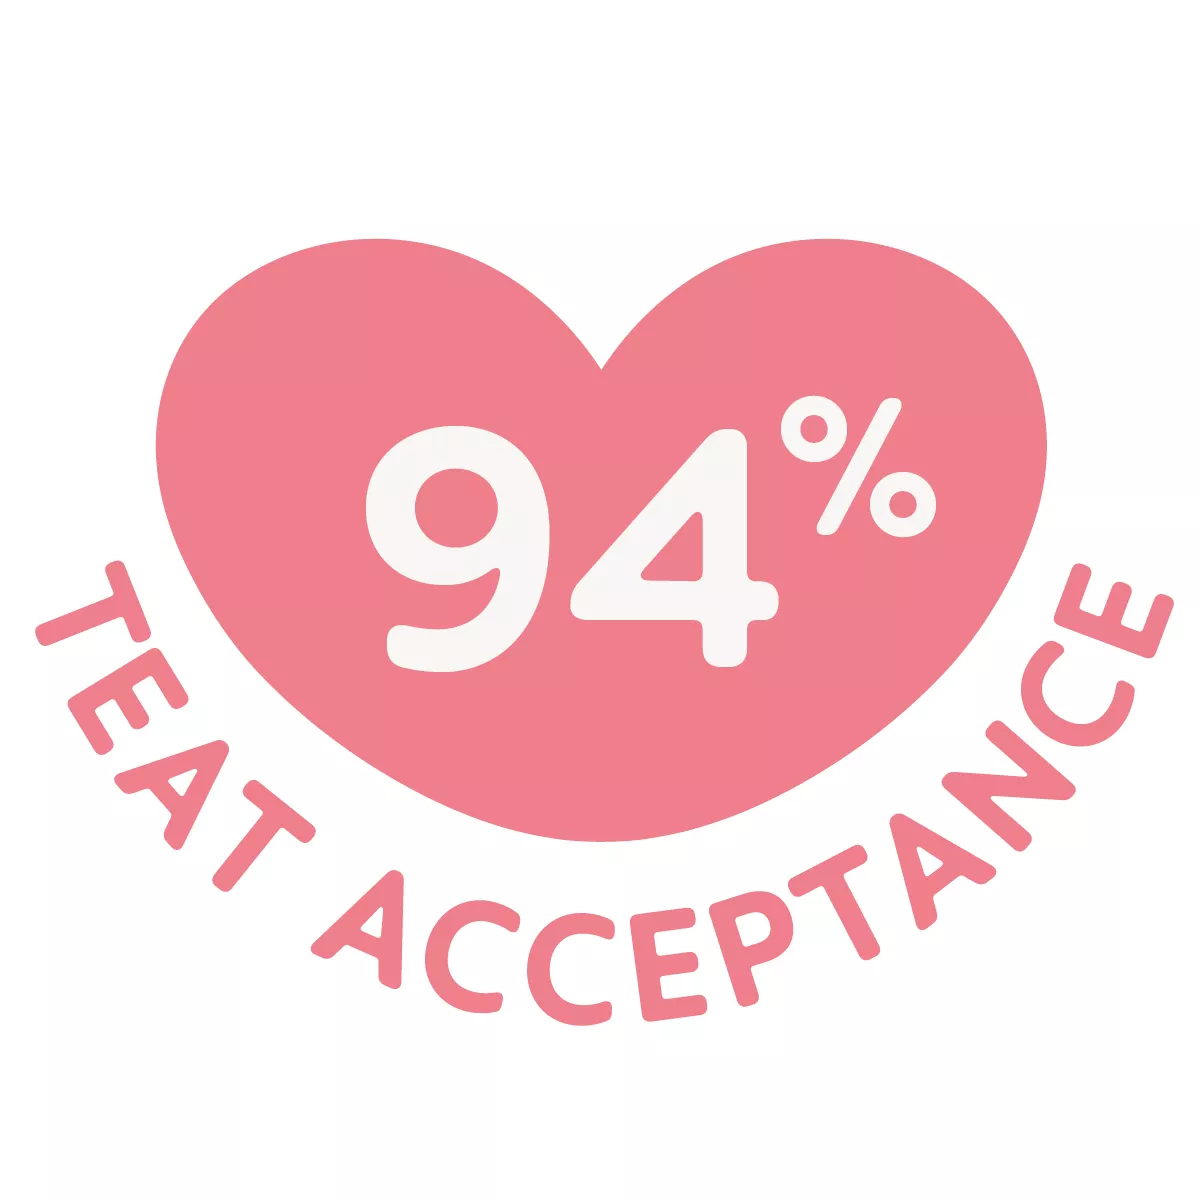 94 % accept af suttehovedet: accepteres nemt af spædbørn, en velkendt fornemmelse